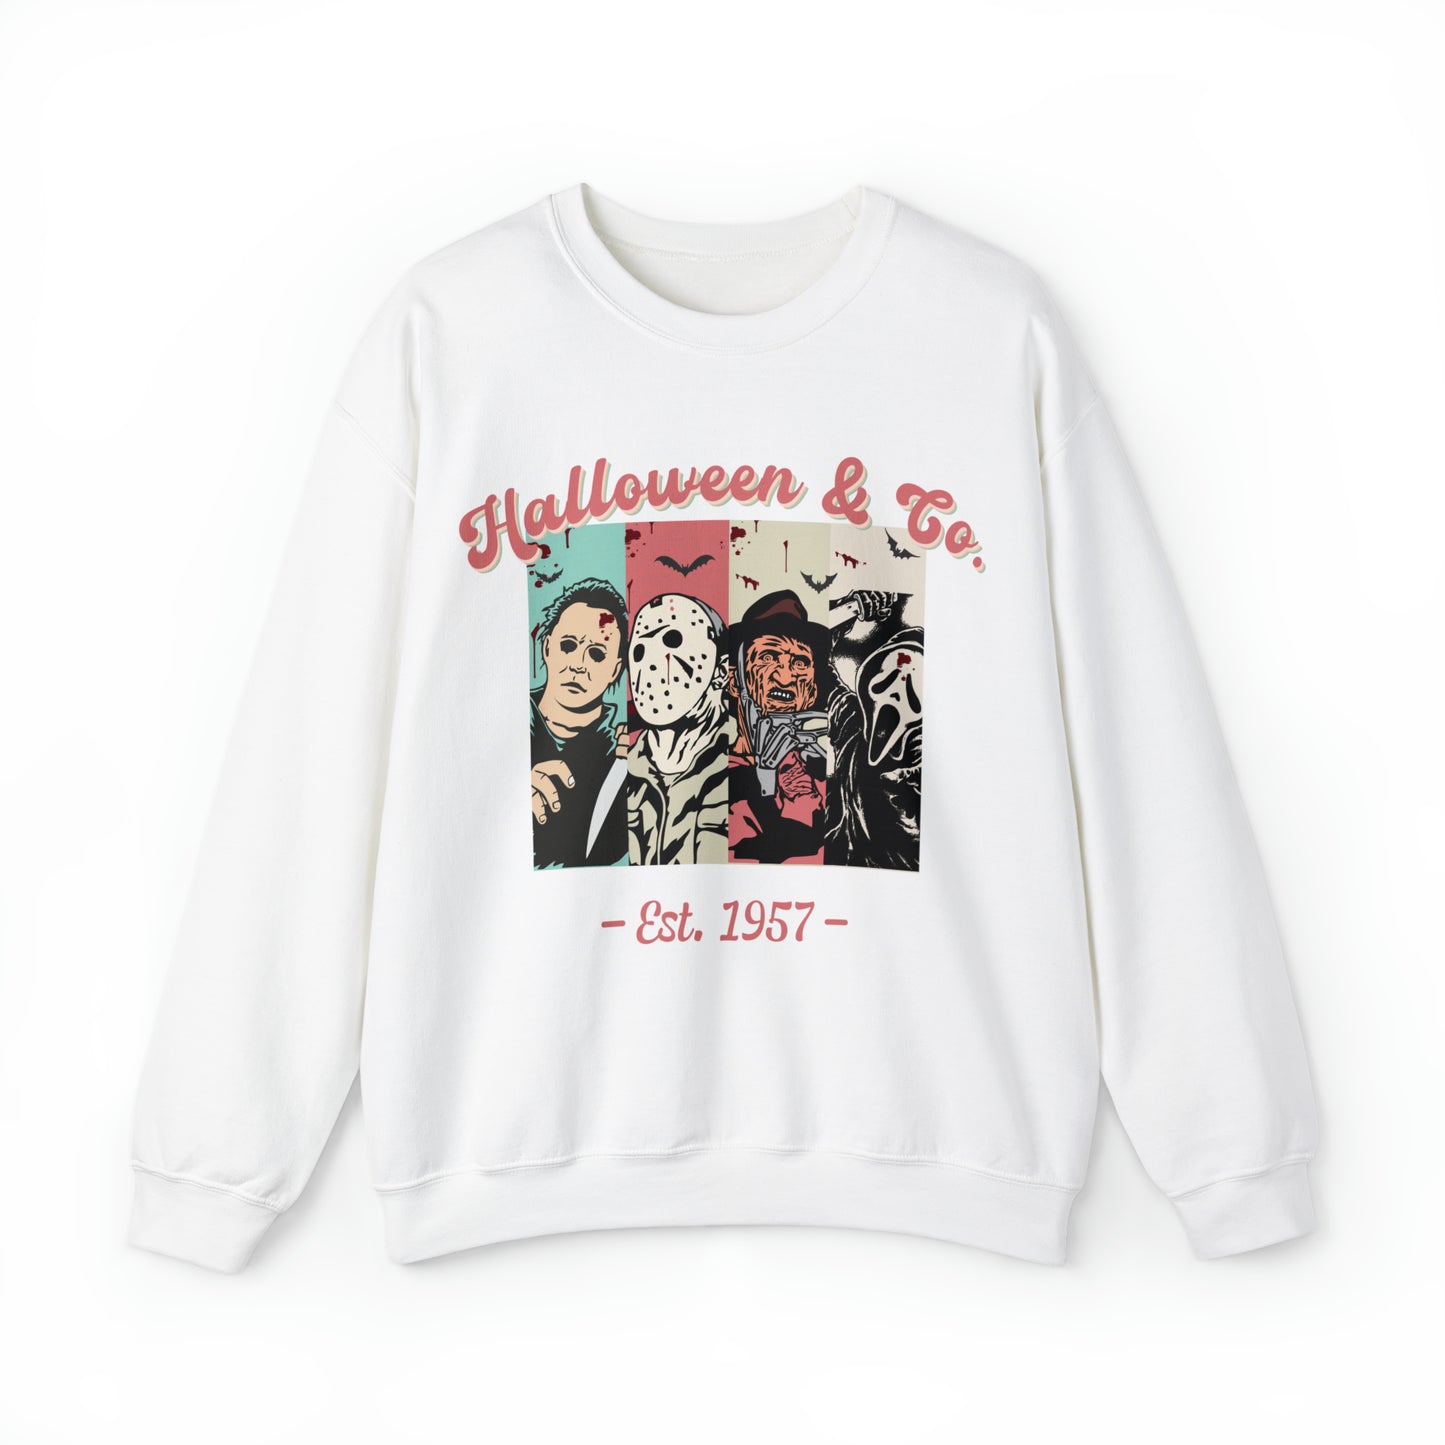 Halloween & Co. Crewneck Sweatshirt